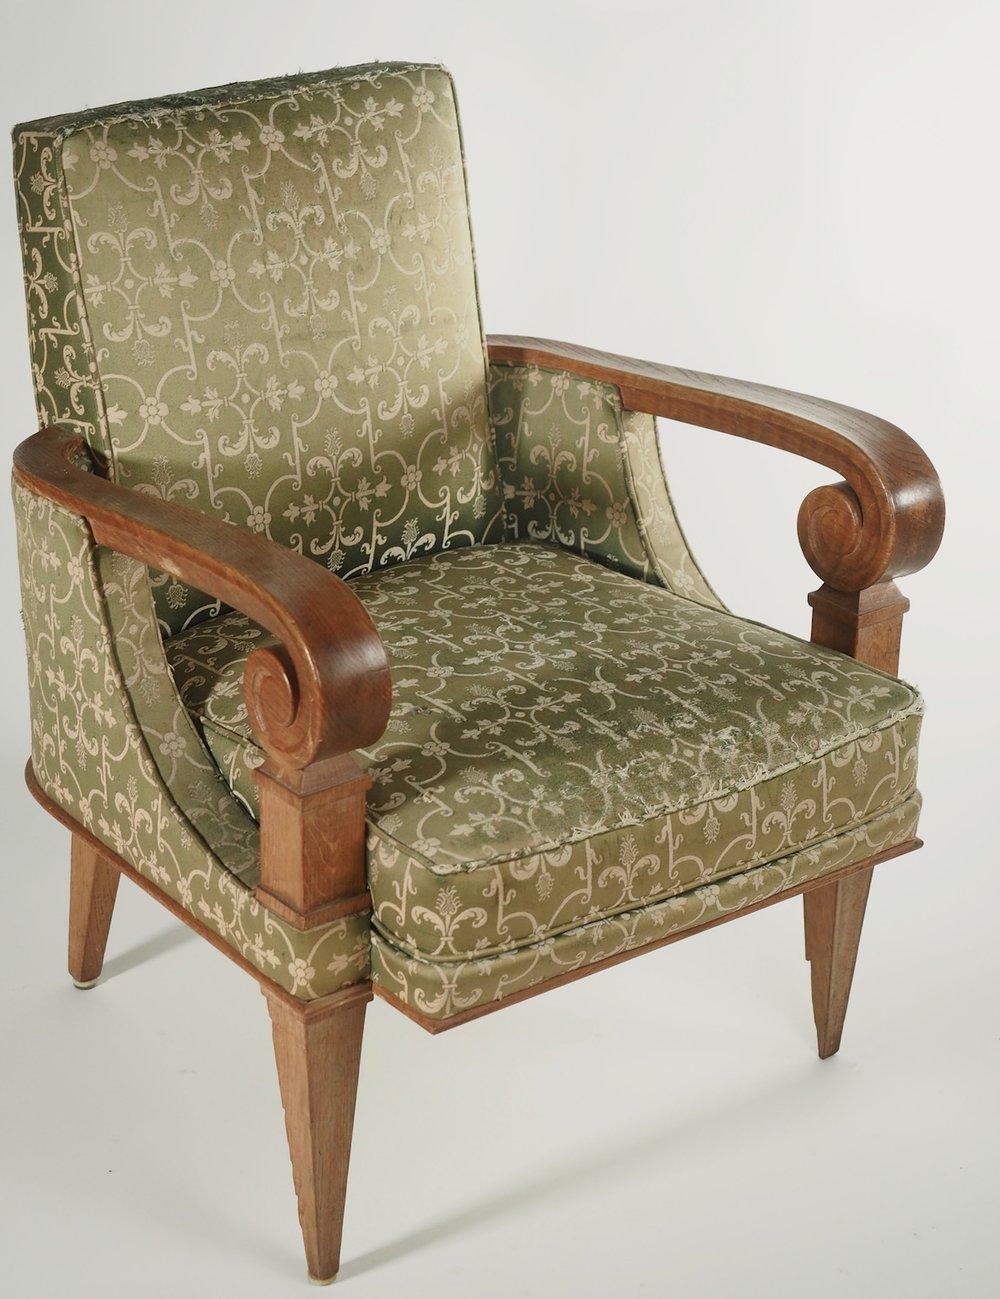 Paire de fauteuils gracieux de style Art Déco français, design attribué à Pierre Lardin. Les photographies n'ont pas été restaurées. Le prix comprend la restauration, la remise en état et la pose d'un nouveau rembourrage avec le tissu de l'acheteur.